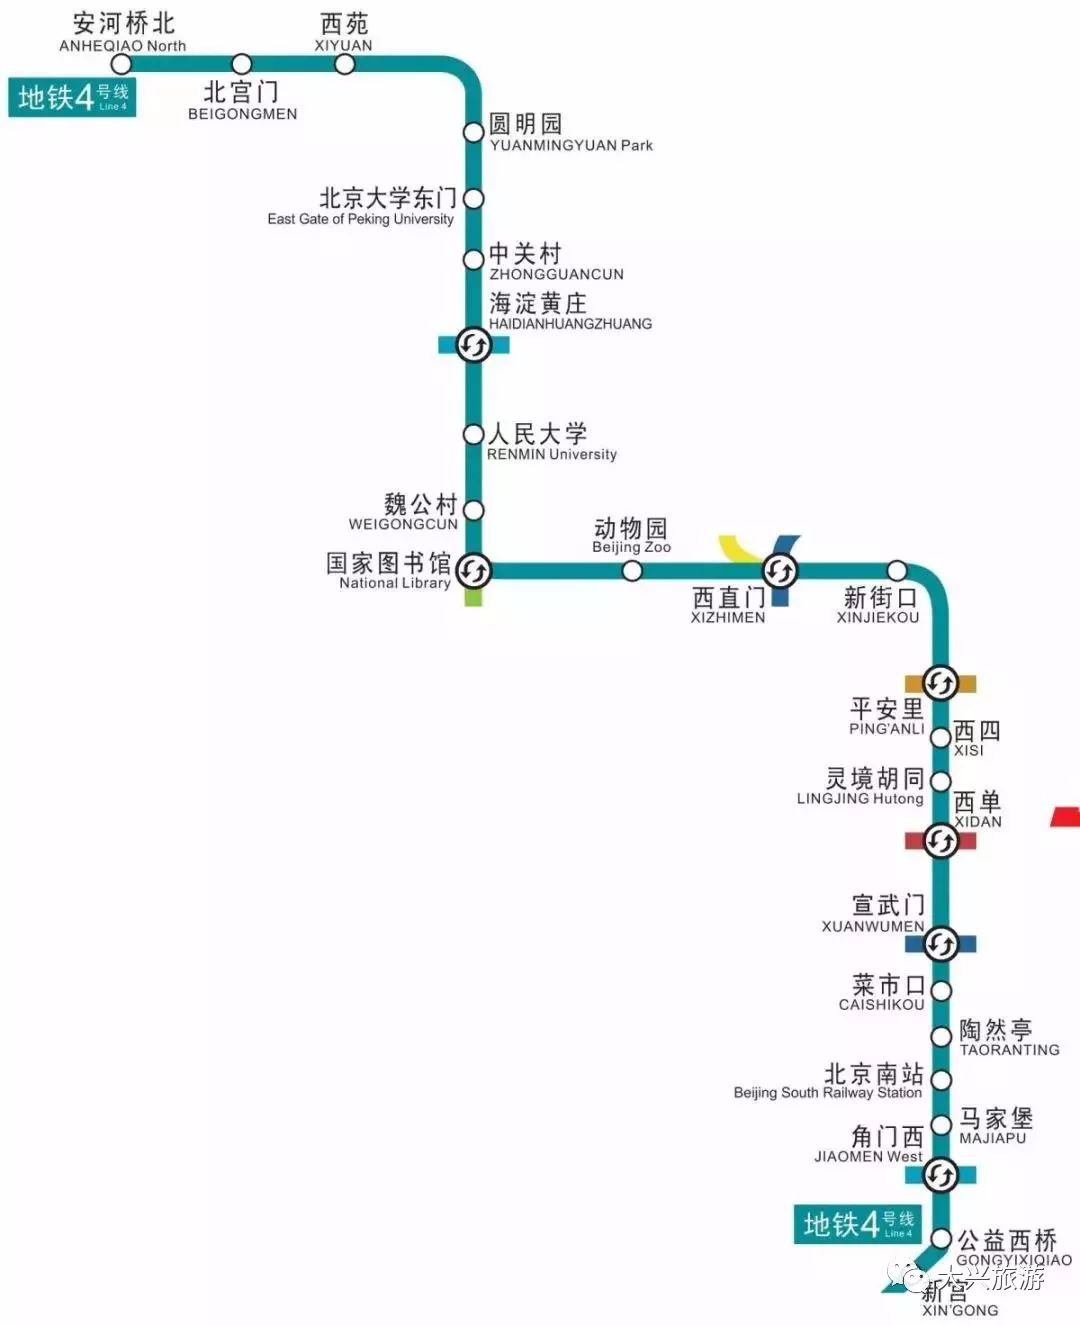 近日,就有委员再次提案 "北京地铁4号线南延至大兴区庞各庄镇" 北京